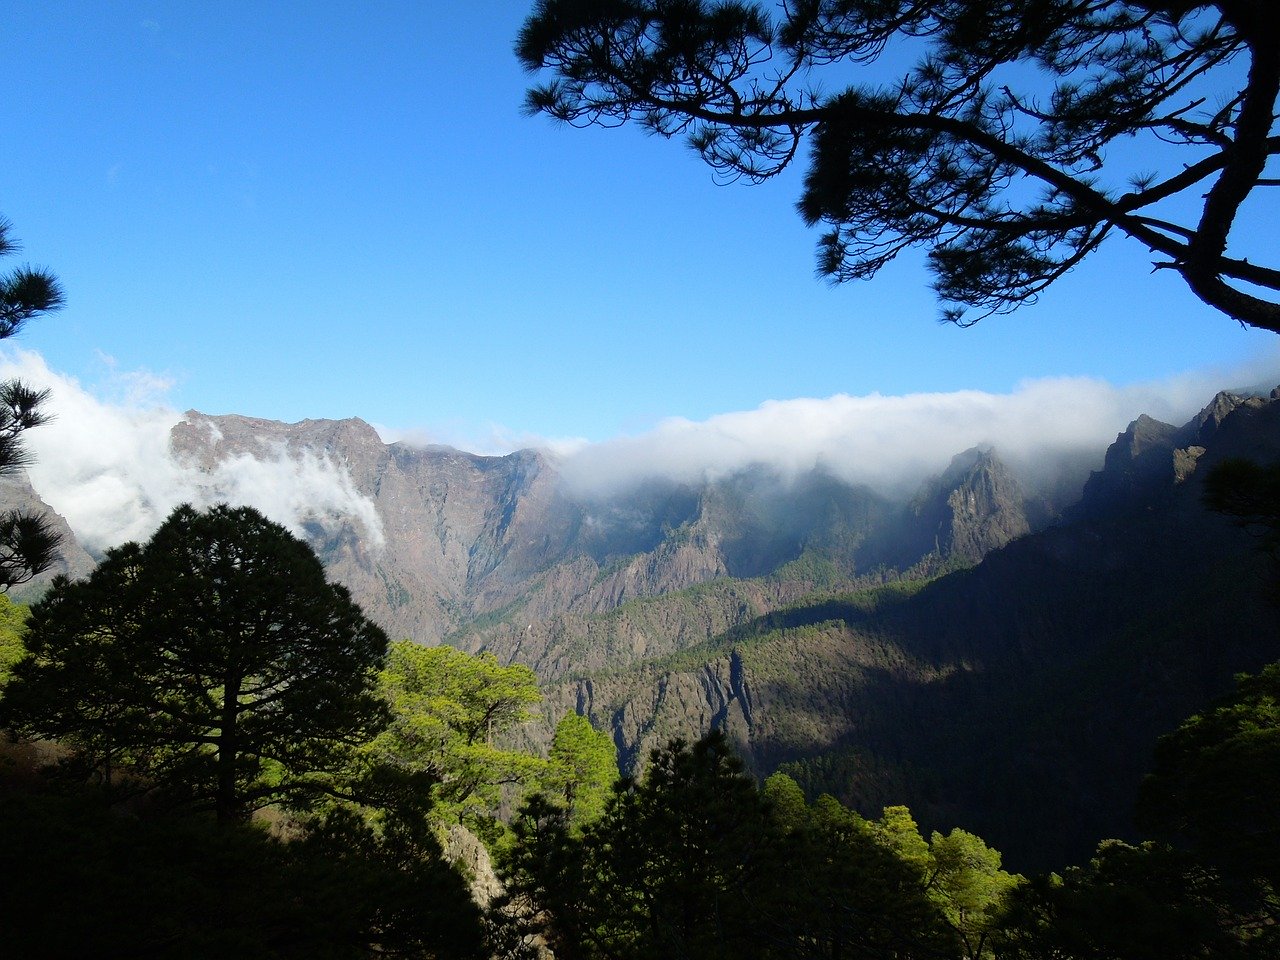 Parque nacional caldera de Taburiente en La Palma